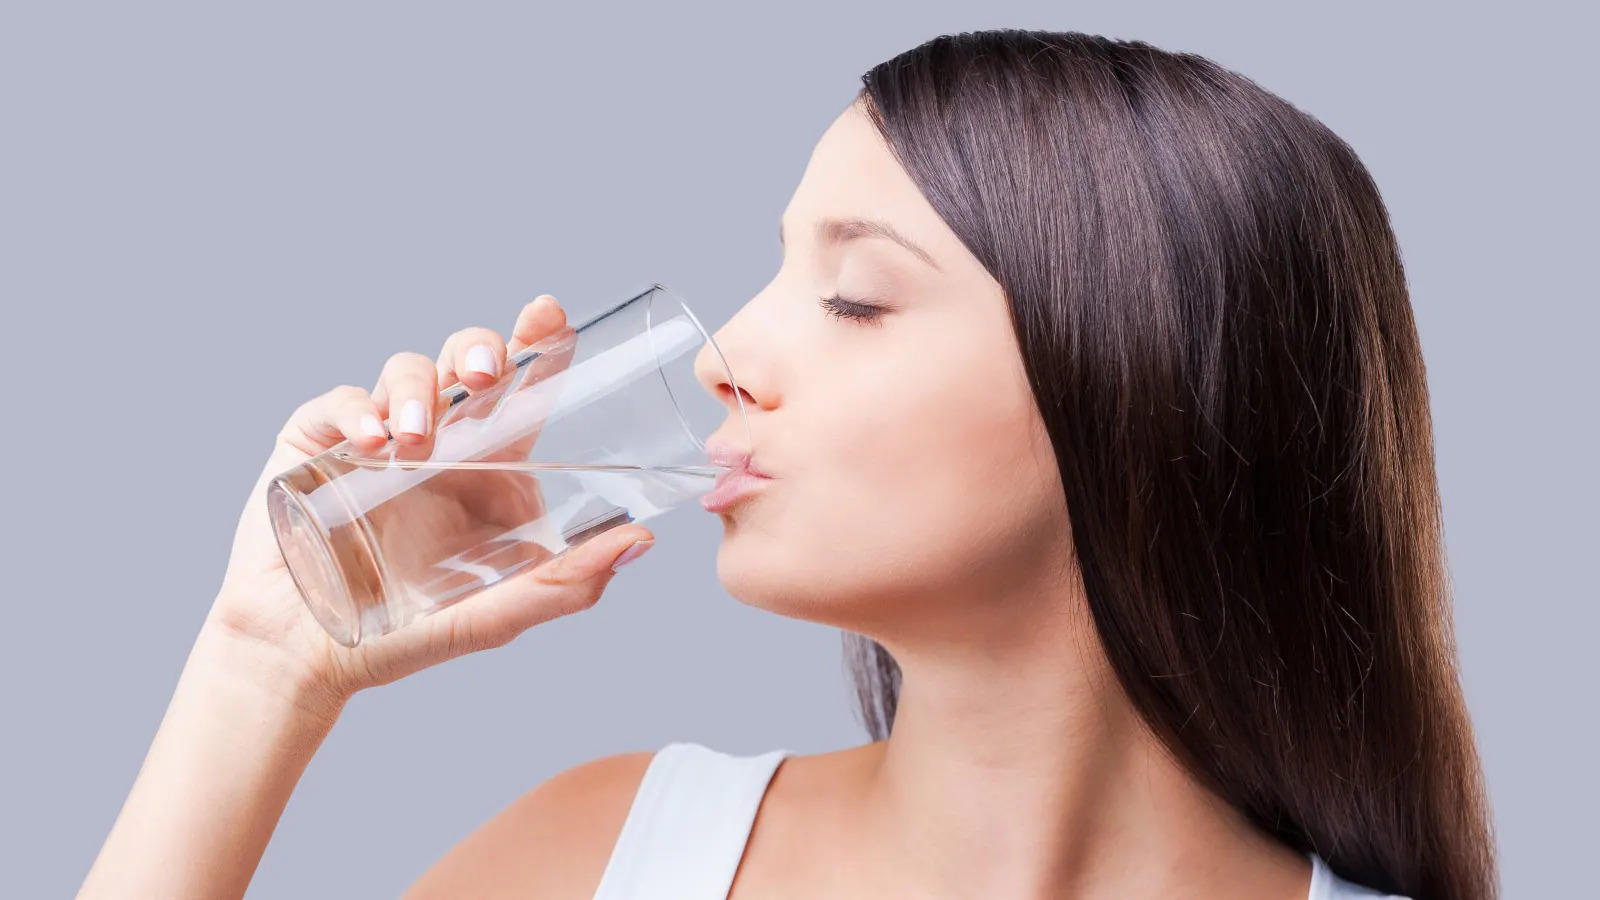 Health Tips- गर्म पानी पीने से होती हैं गंभीर बीमारियां, हो जाएं सावधान